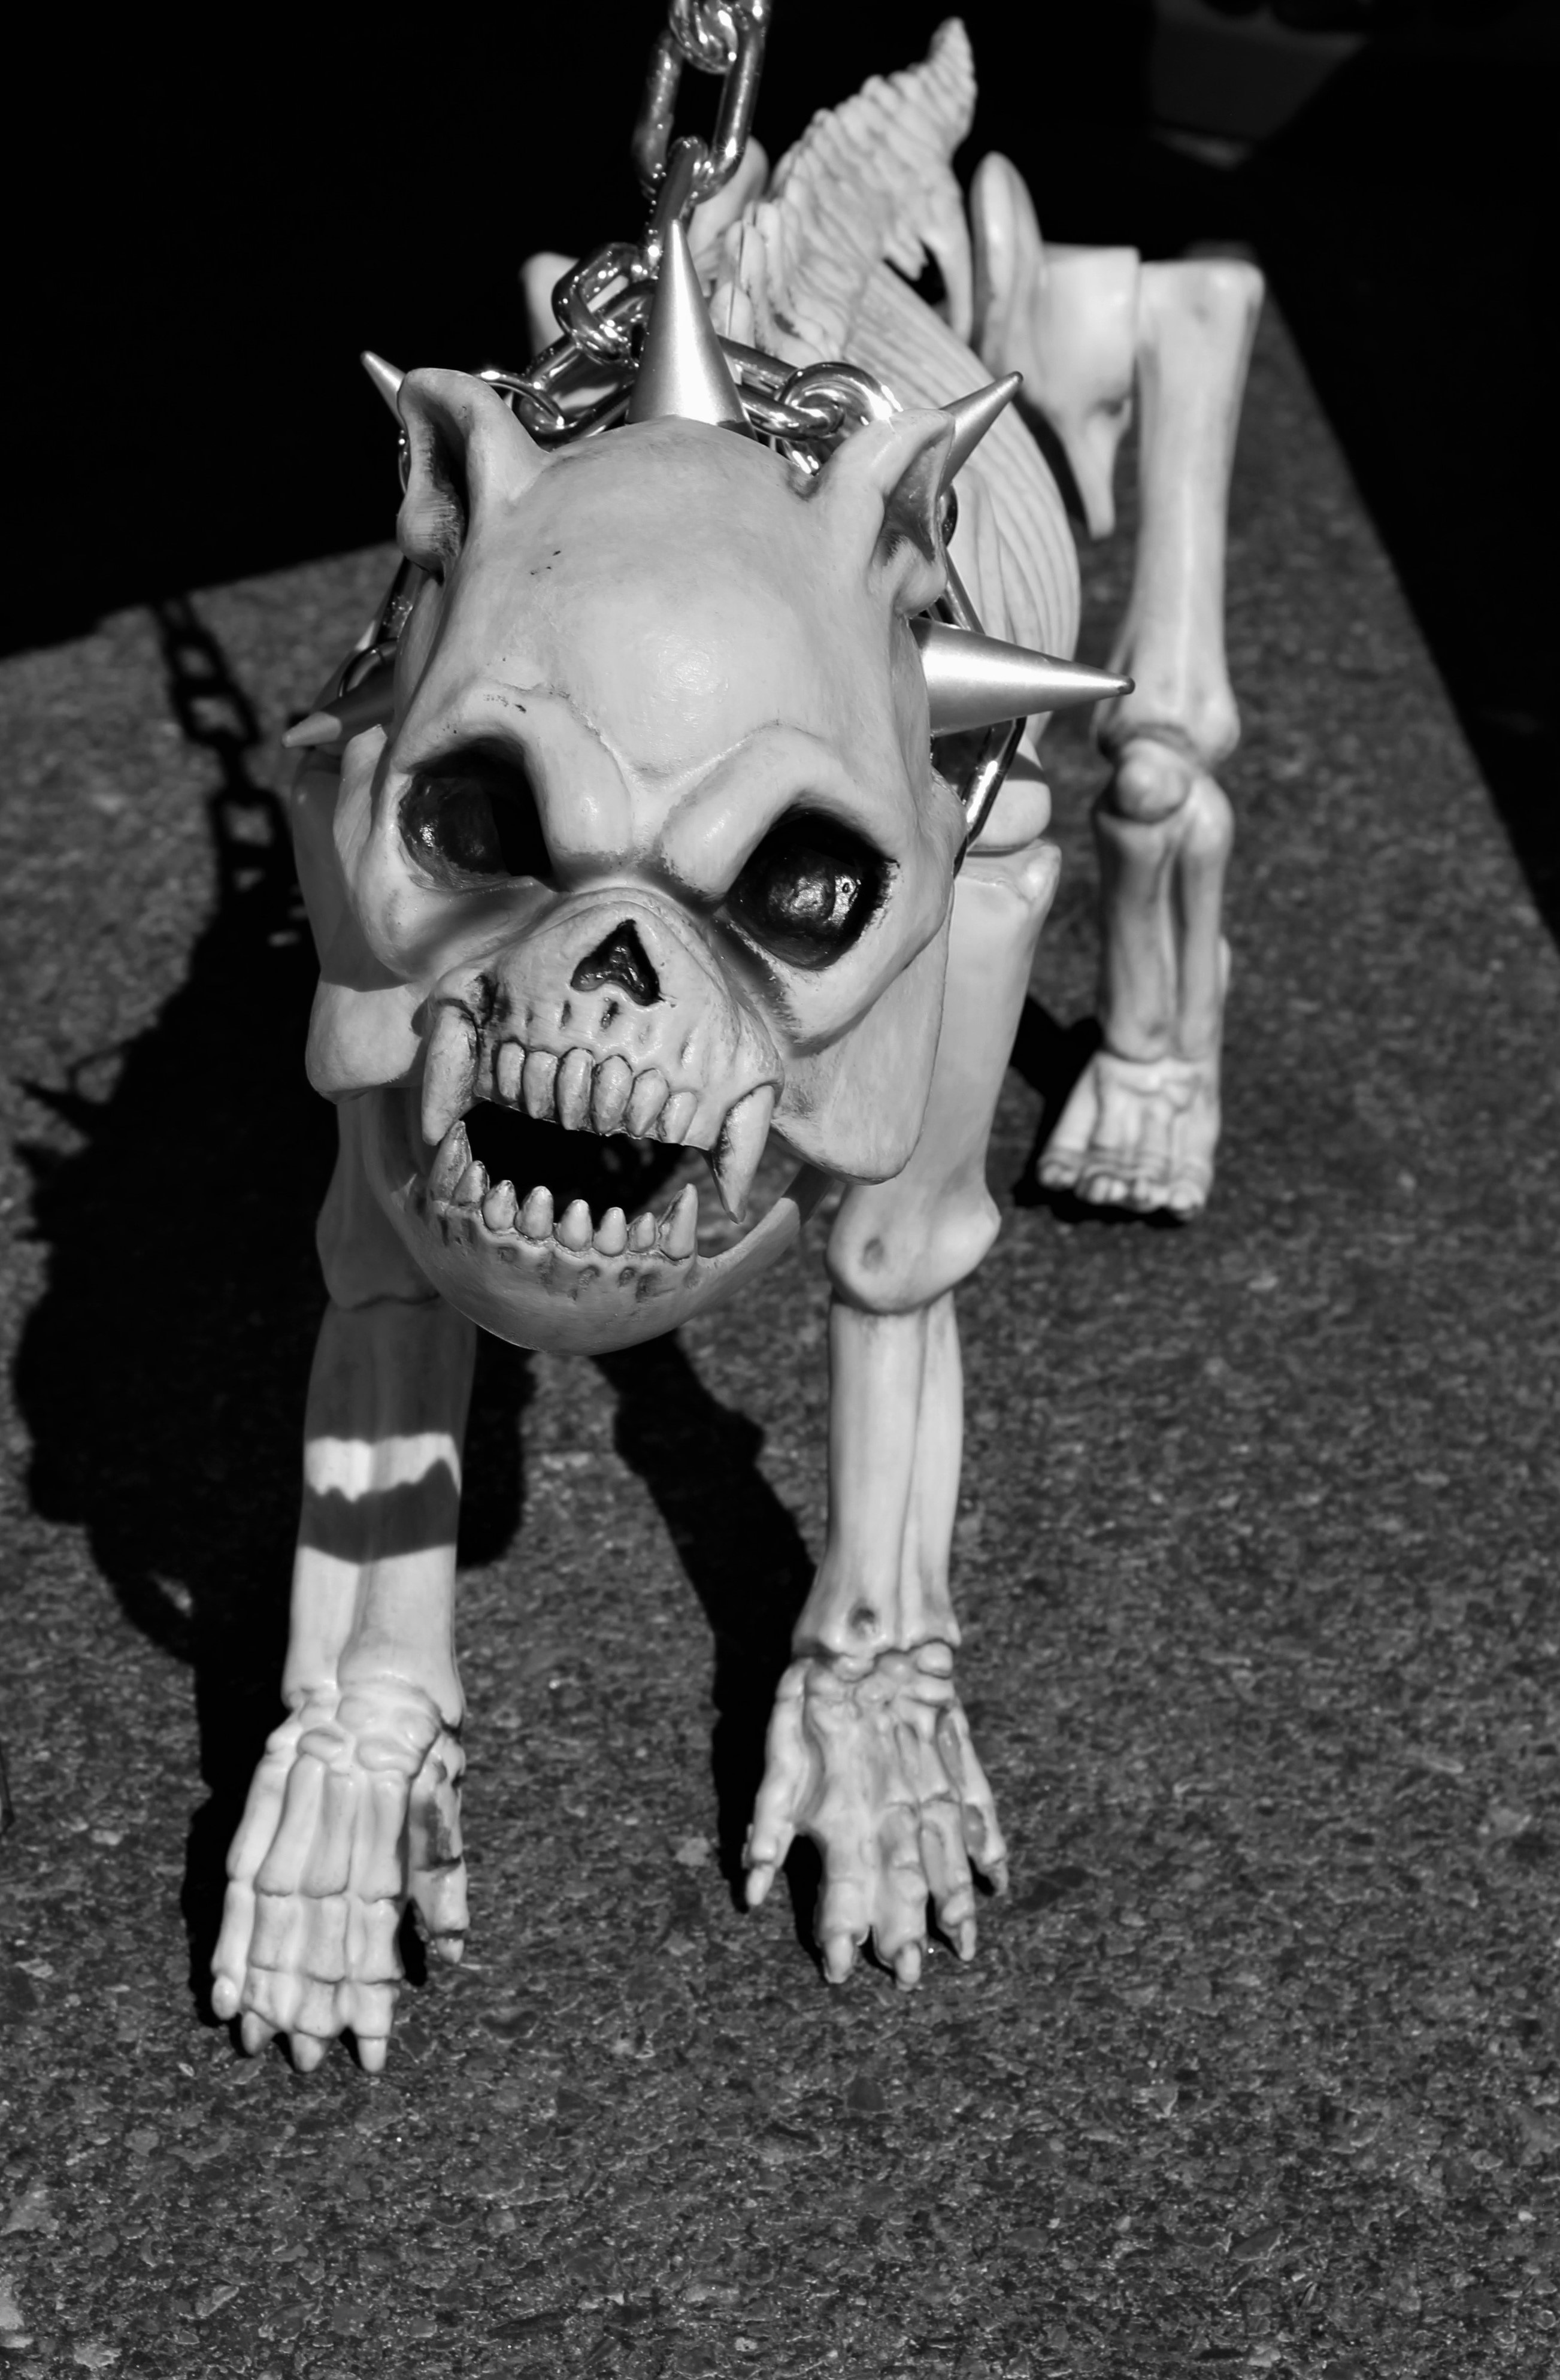 white skull dog figure